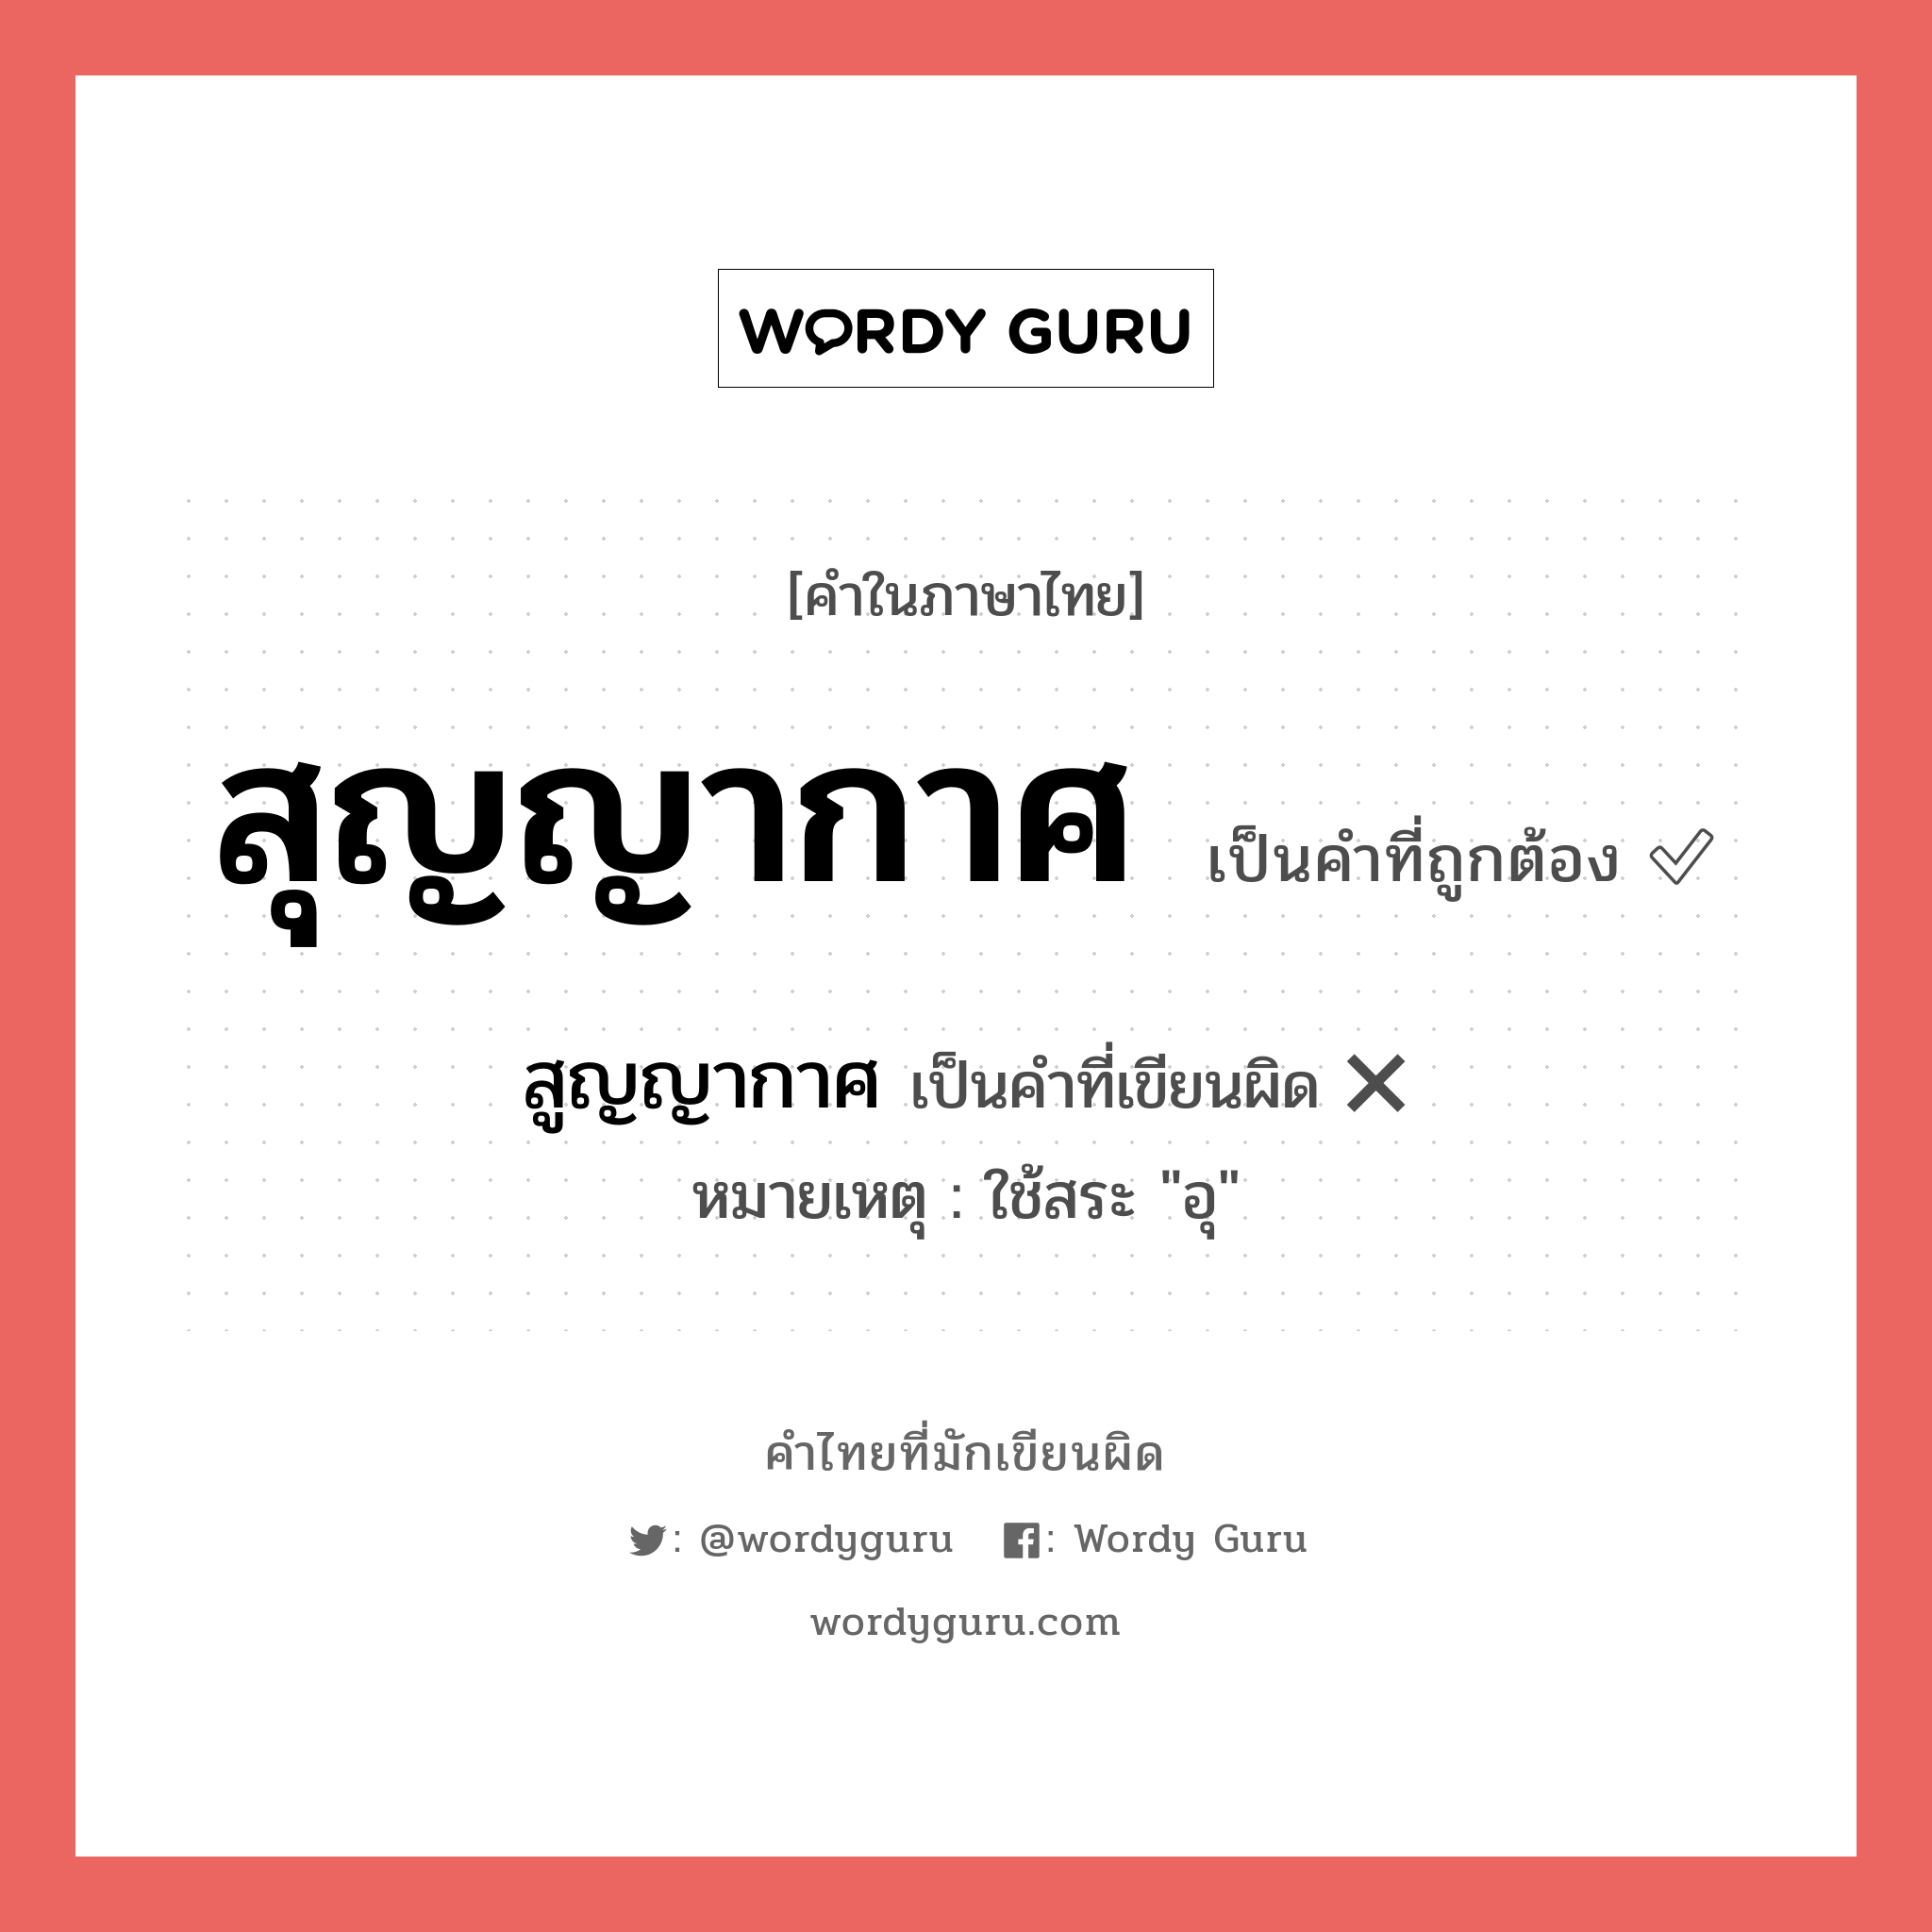 สุญญากาศ หรือ สูญญากาศ คำไหนเขียนถูก?, คำในภาษาไทยที่มักเขียนผิด สุญญากาศ คำที่ผิด ❌ สูญญากาศ หมายเหตุ ใช้สระ "อุ"